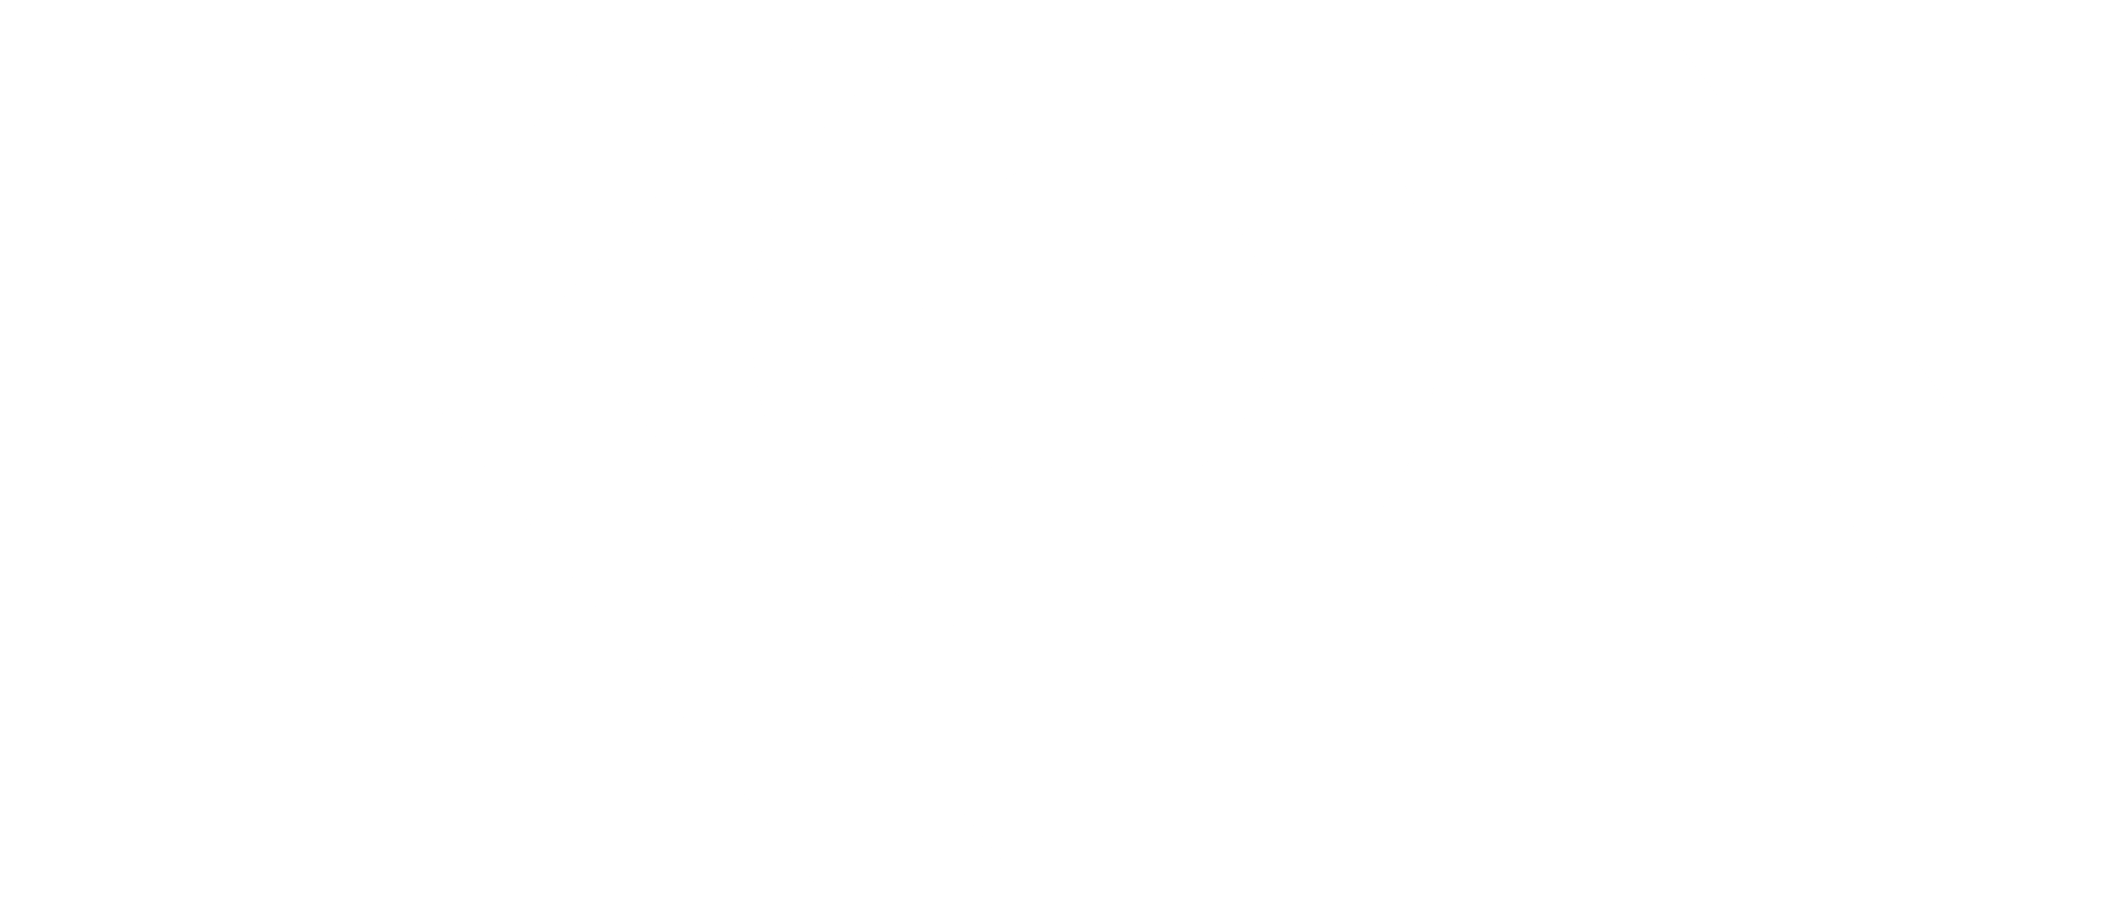 Ikon Logo - HD Ikon Logo Black And White, Png Download, Free